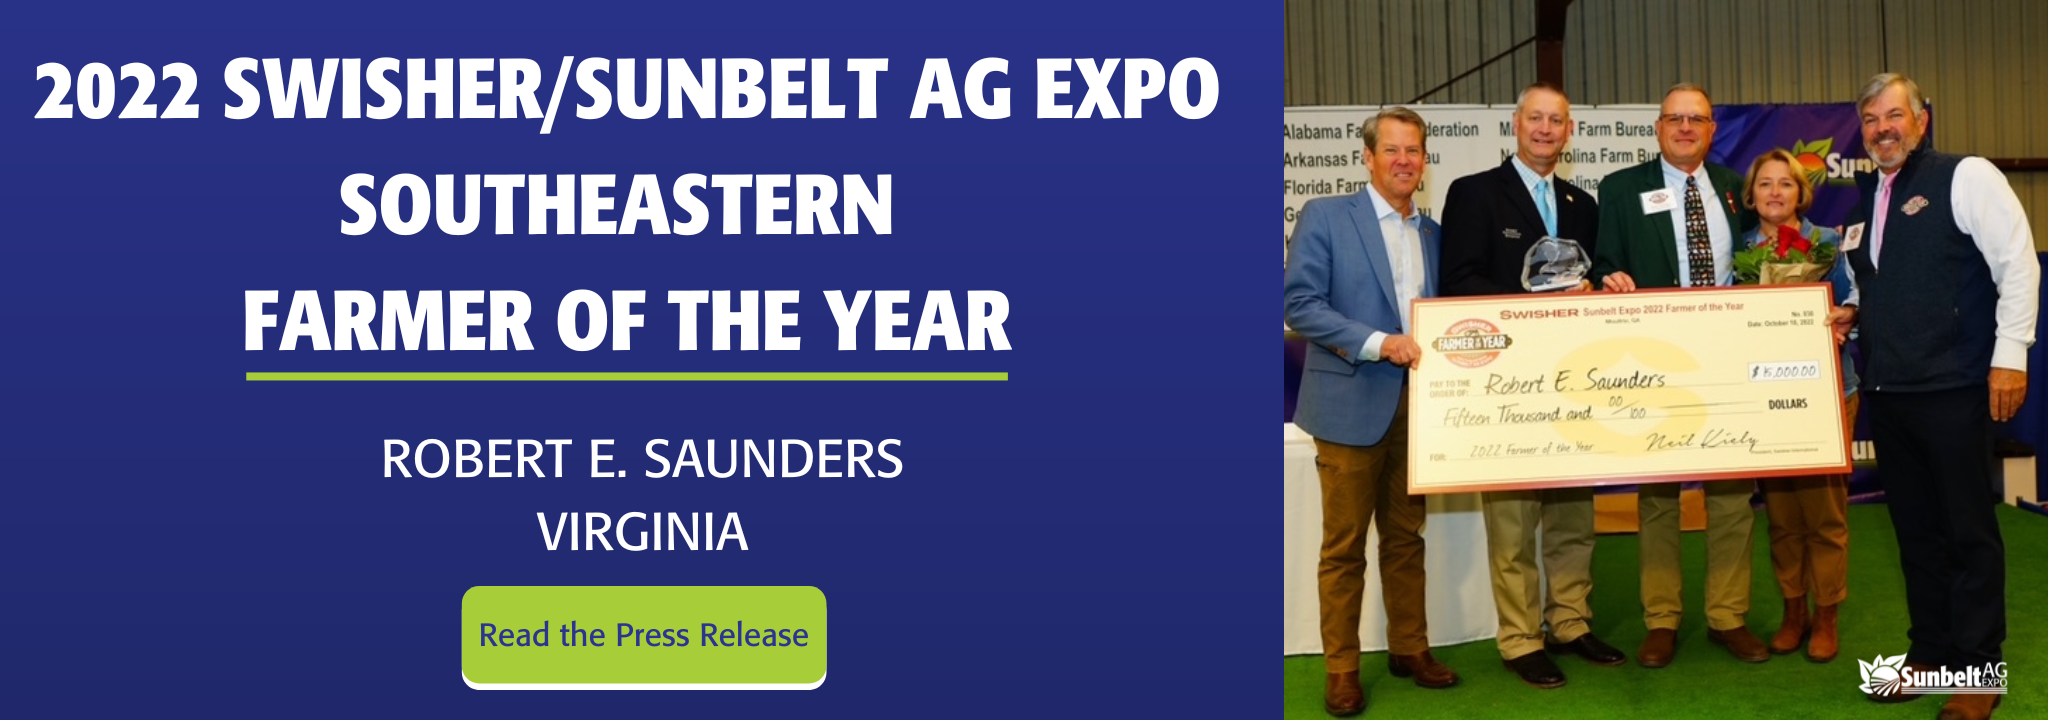 Sunbelt Website Banner 2 Farmer of the Year 2022